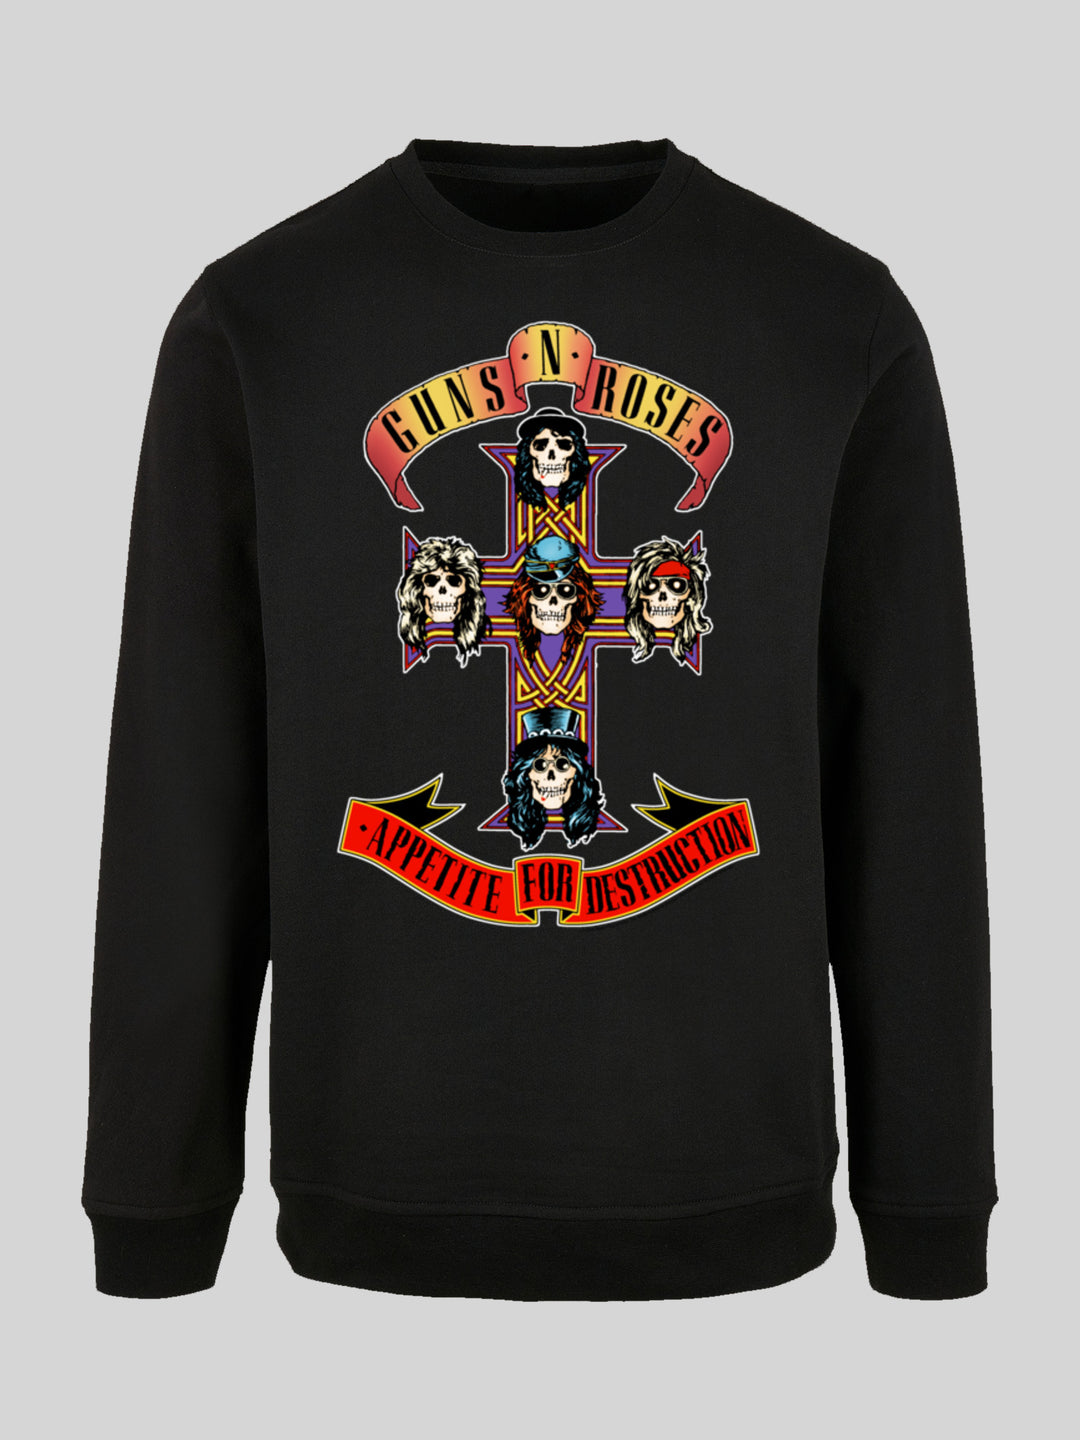 Guns 'n' Roses Sweatshirt | Appetite For Destruction Herren | Longsleeve Sweater